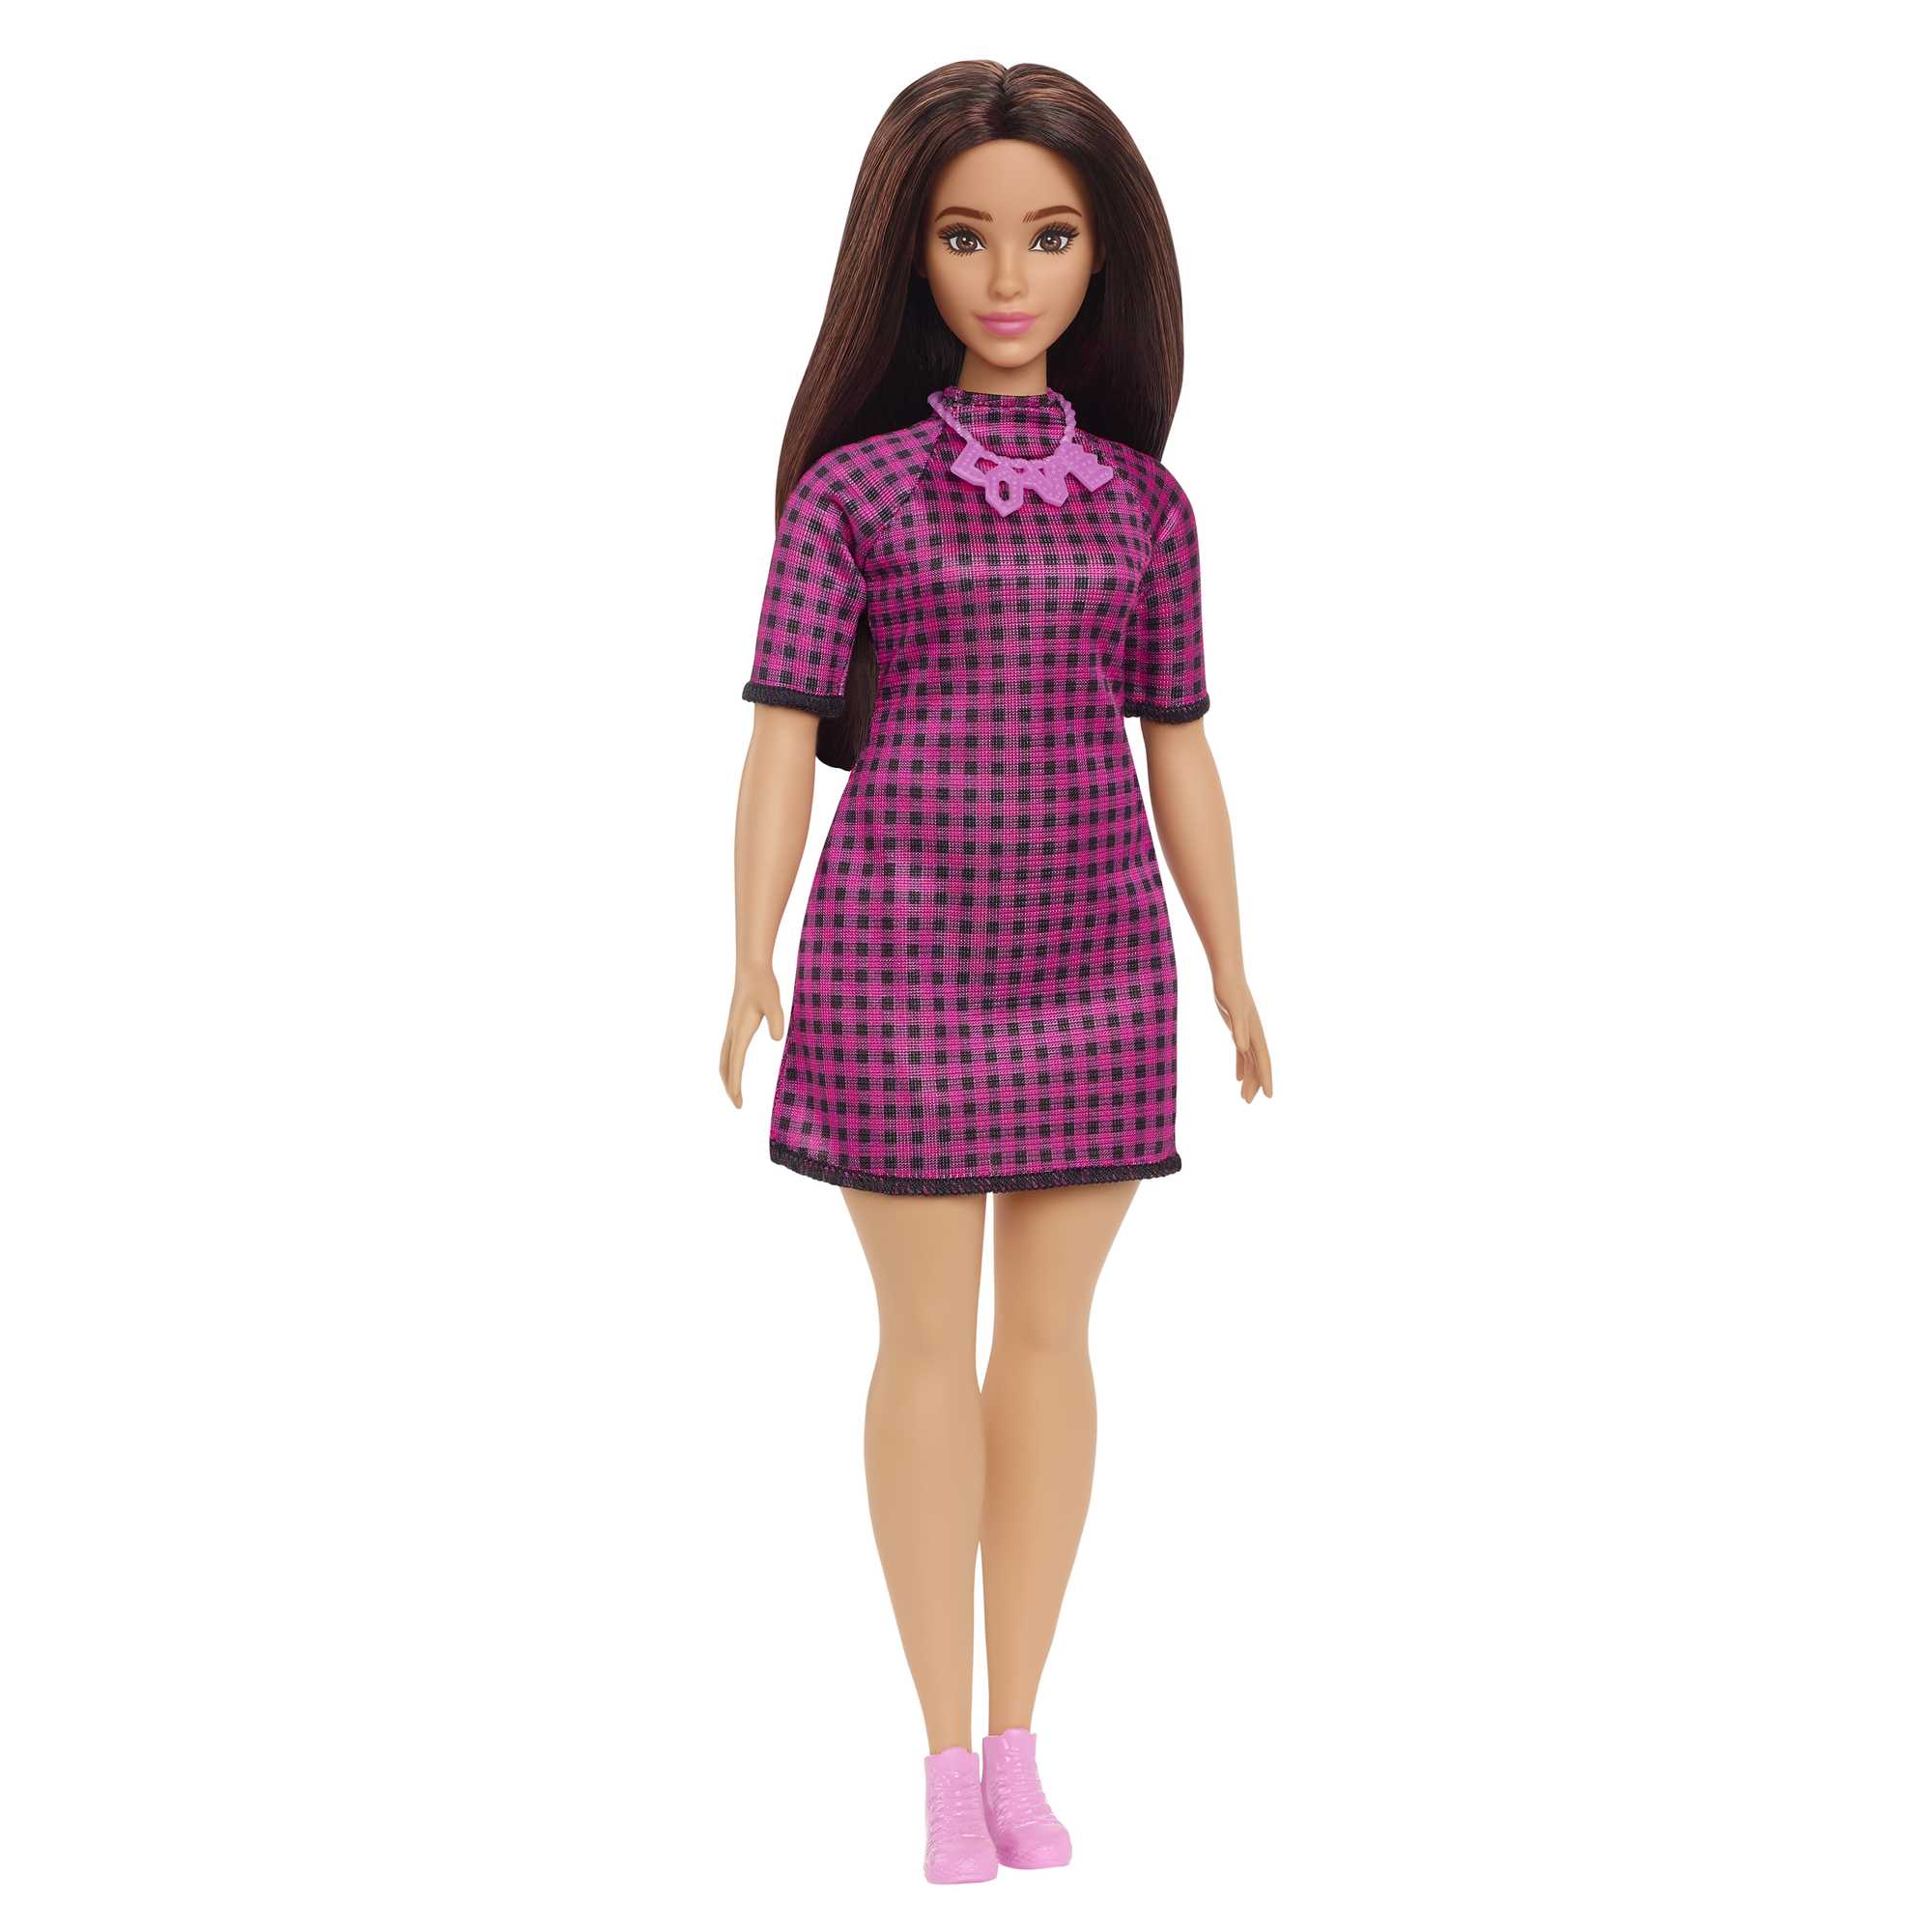 Кукла Mattel Barbie с длинными волосами брюнетка HBV20 кукла barbie принцесса брюнетка в ярком платье gjk15